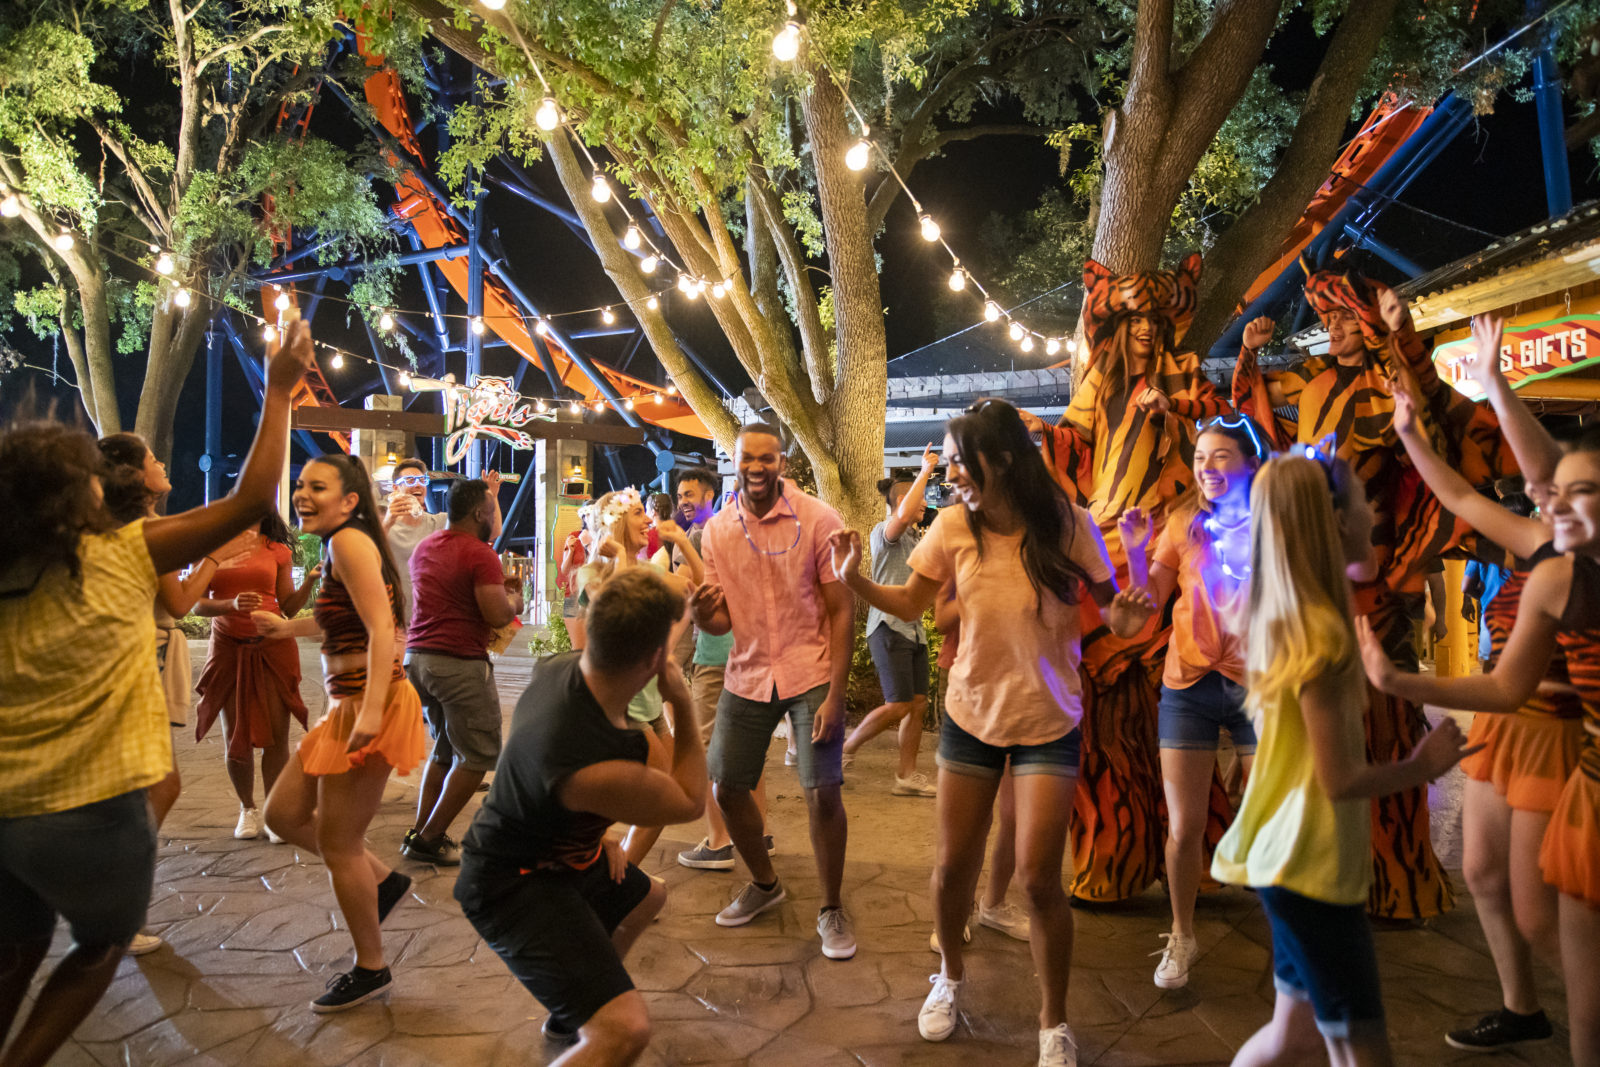 Busch Gardens Tampa Bay Summer Nights 2019